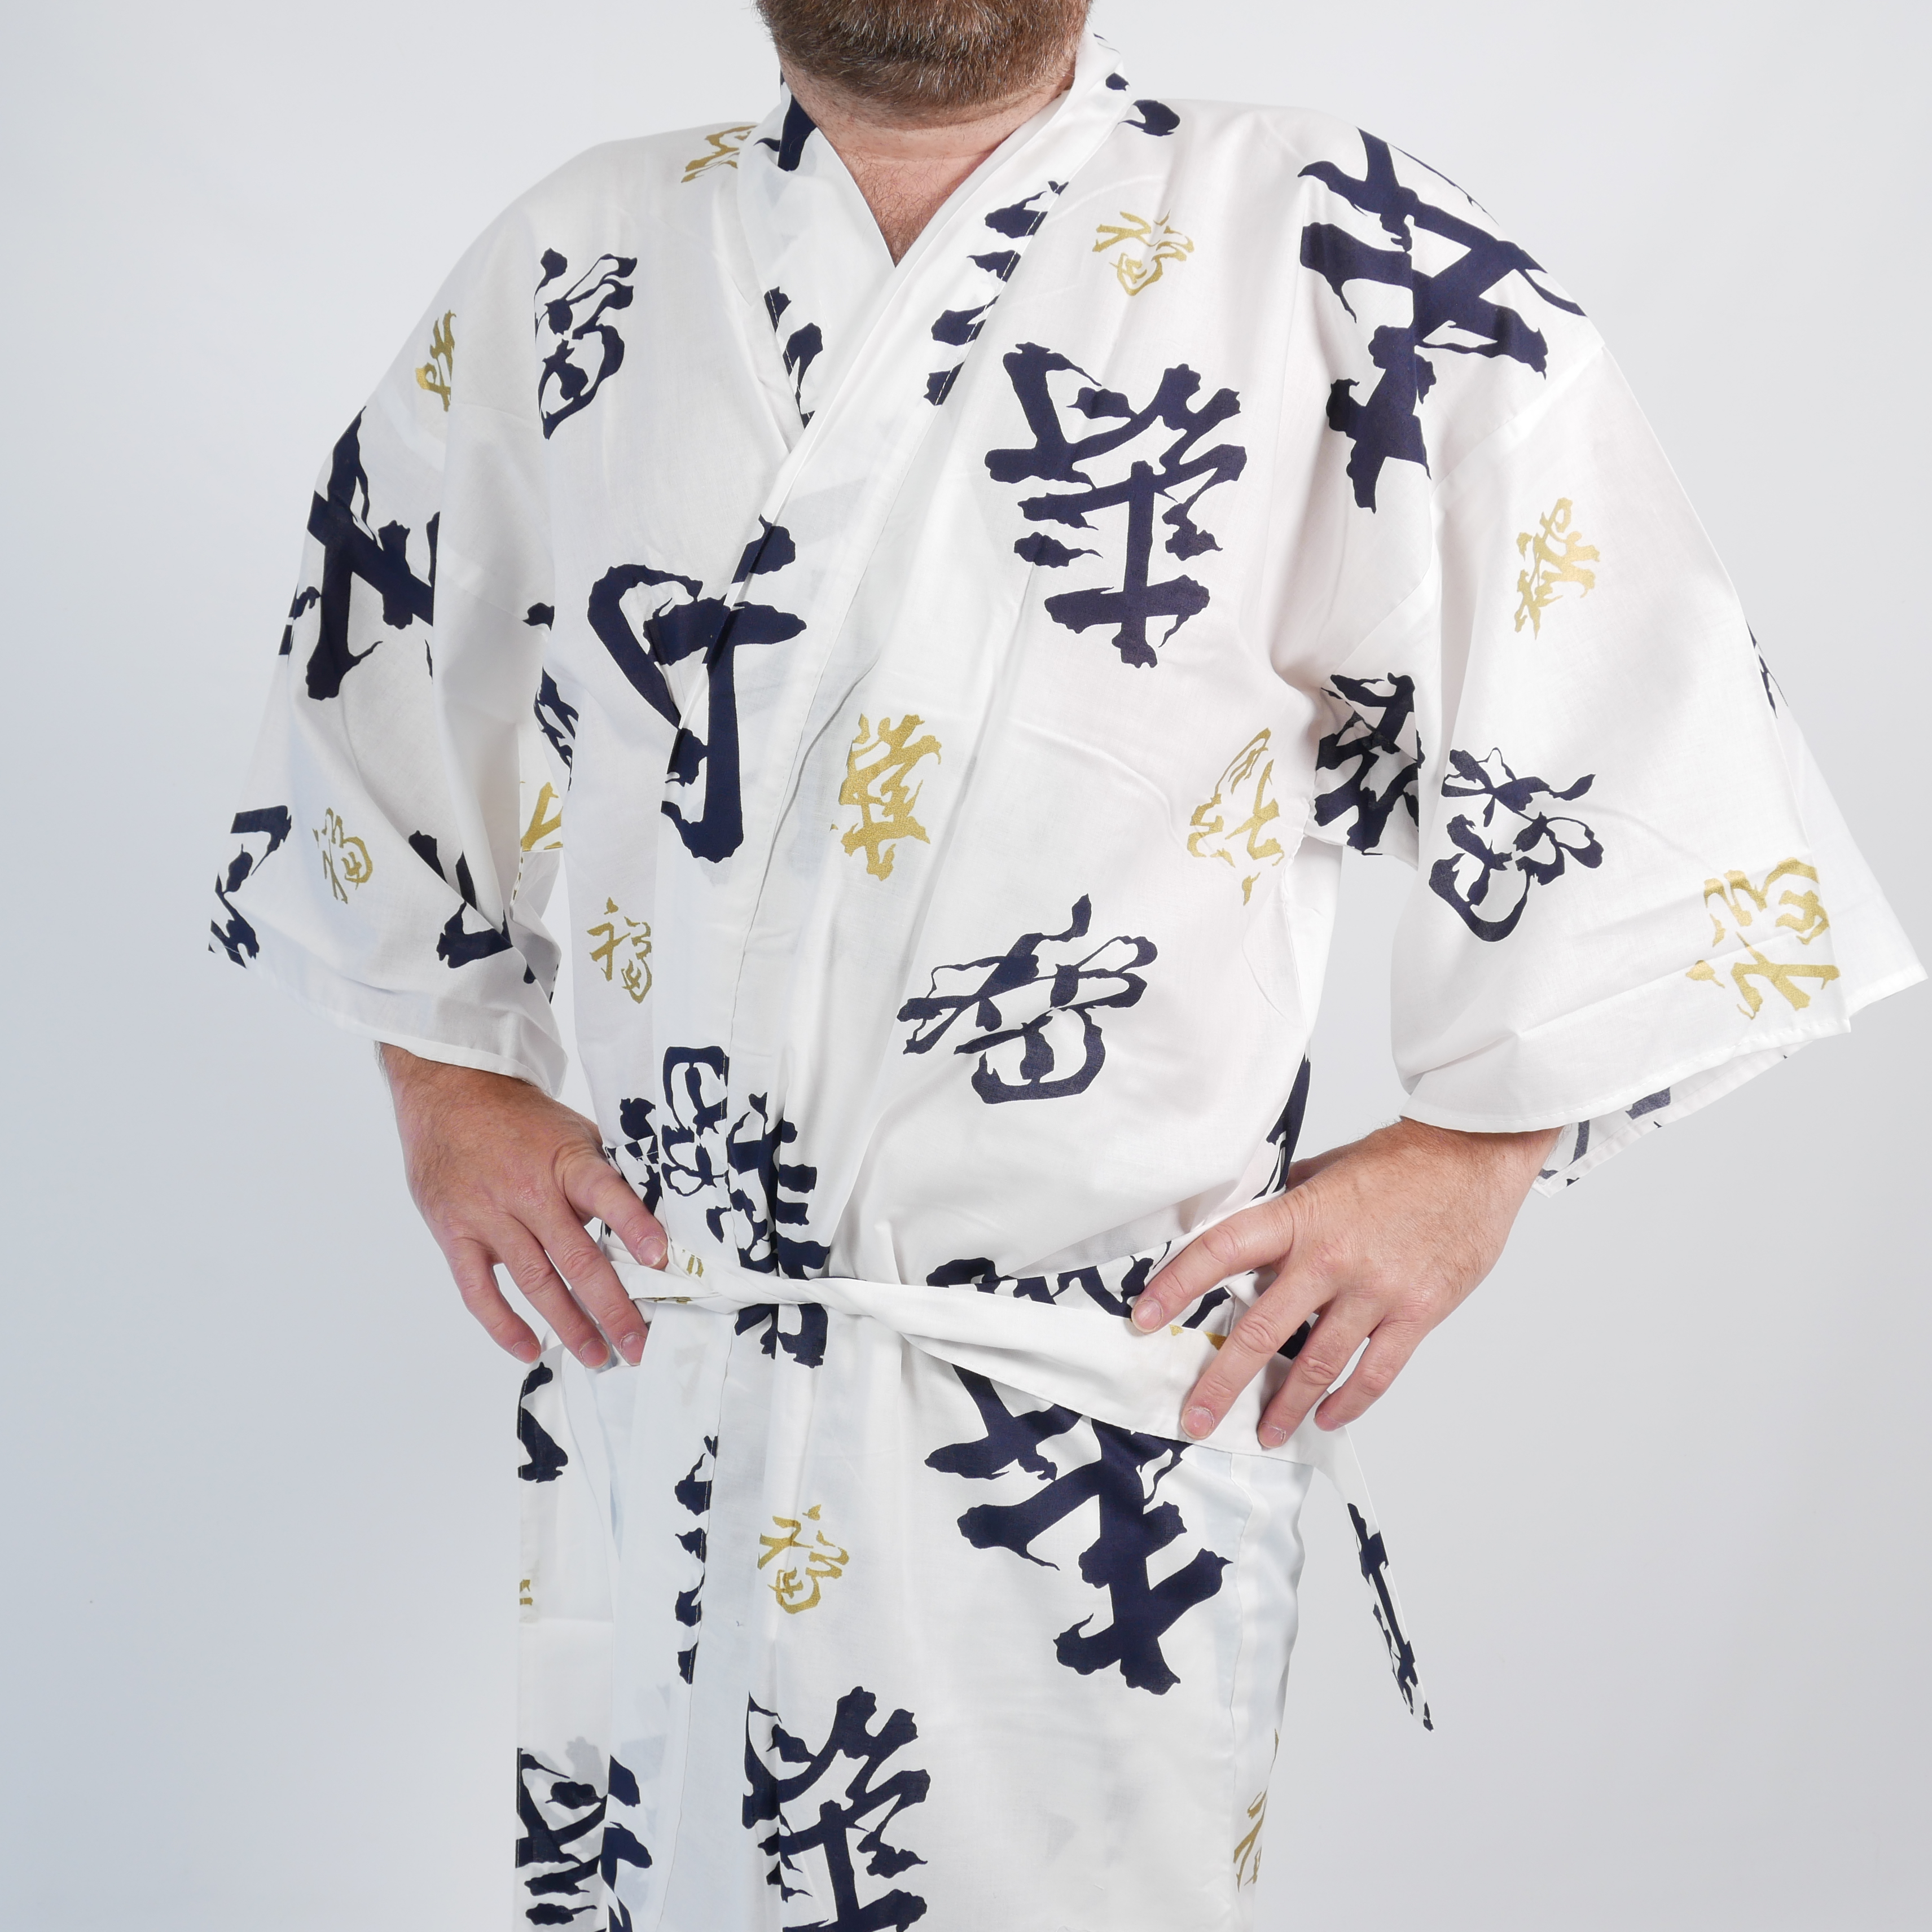 Uomo giapponese con il kimono che mangia ramen